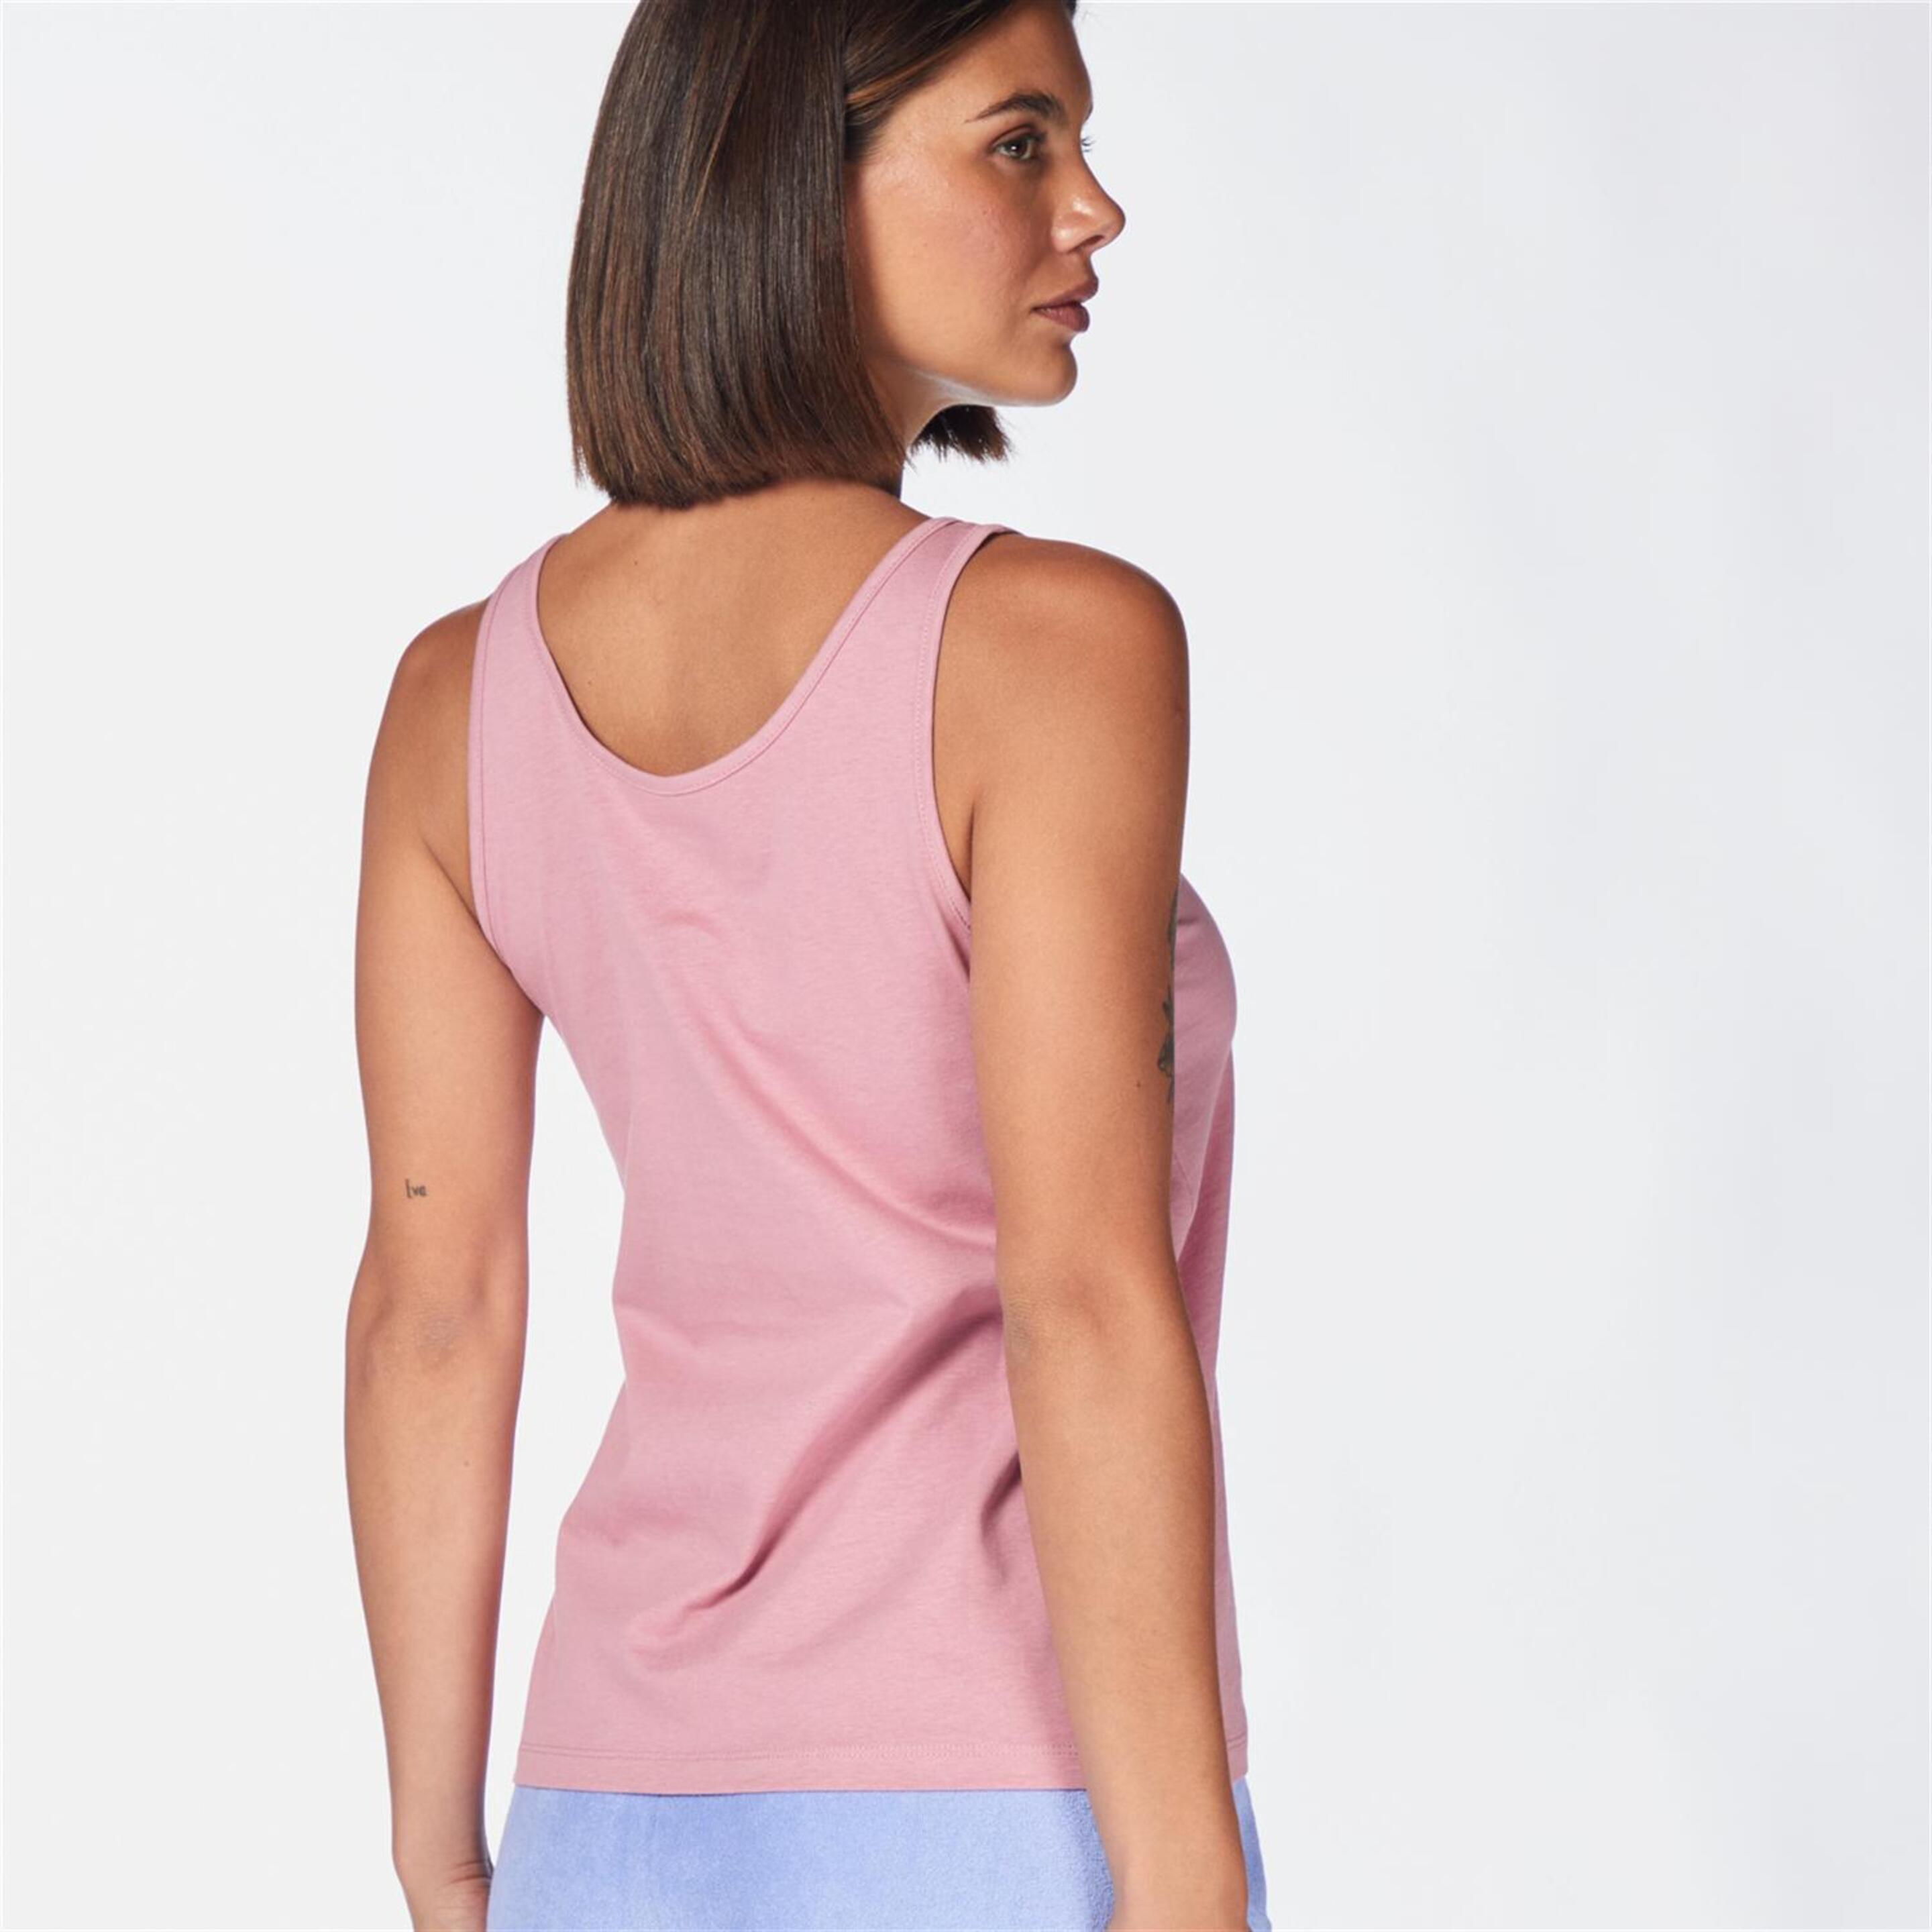 Camiseta Up - Rosa - Camiseta Tirantes Mujer